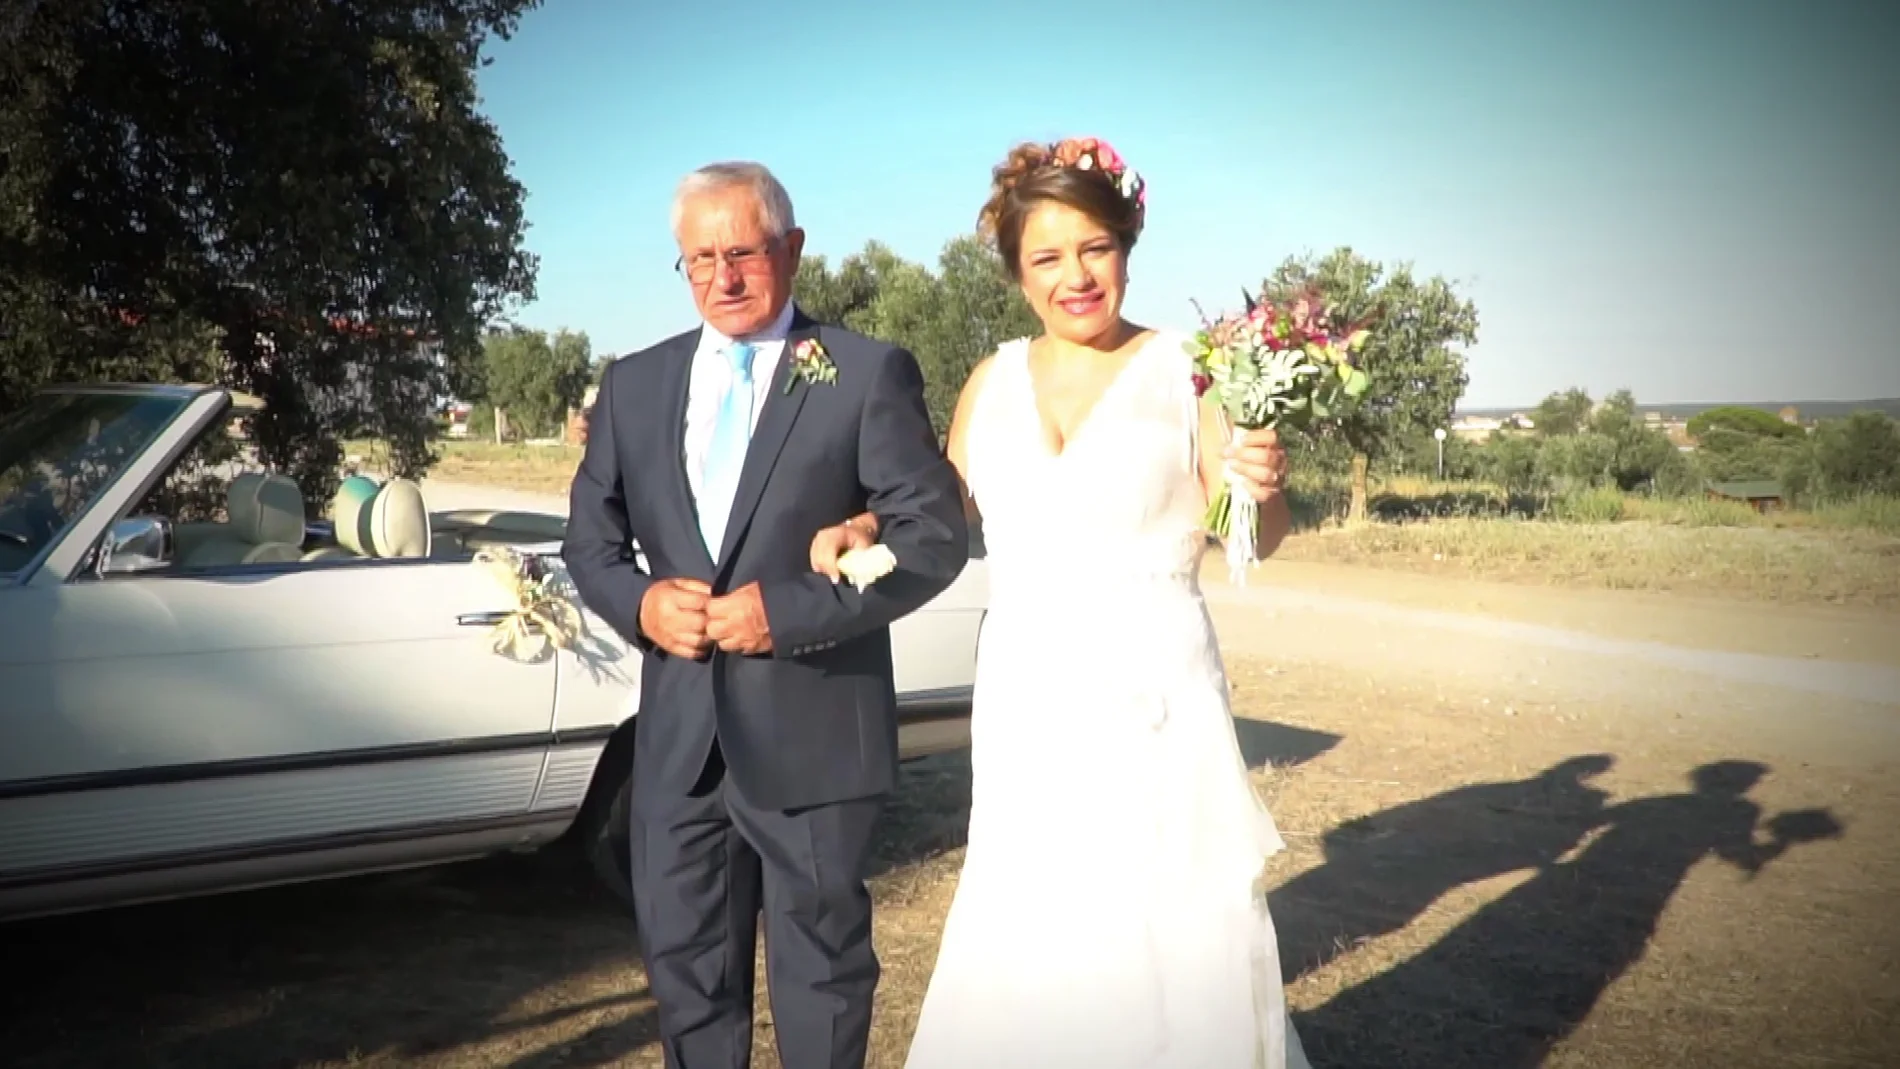 Una boda trascendental para Verónica: “Ha sido mejor de como lo soñaba”